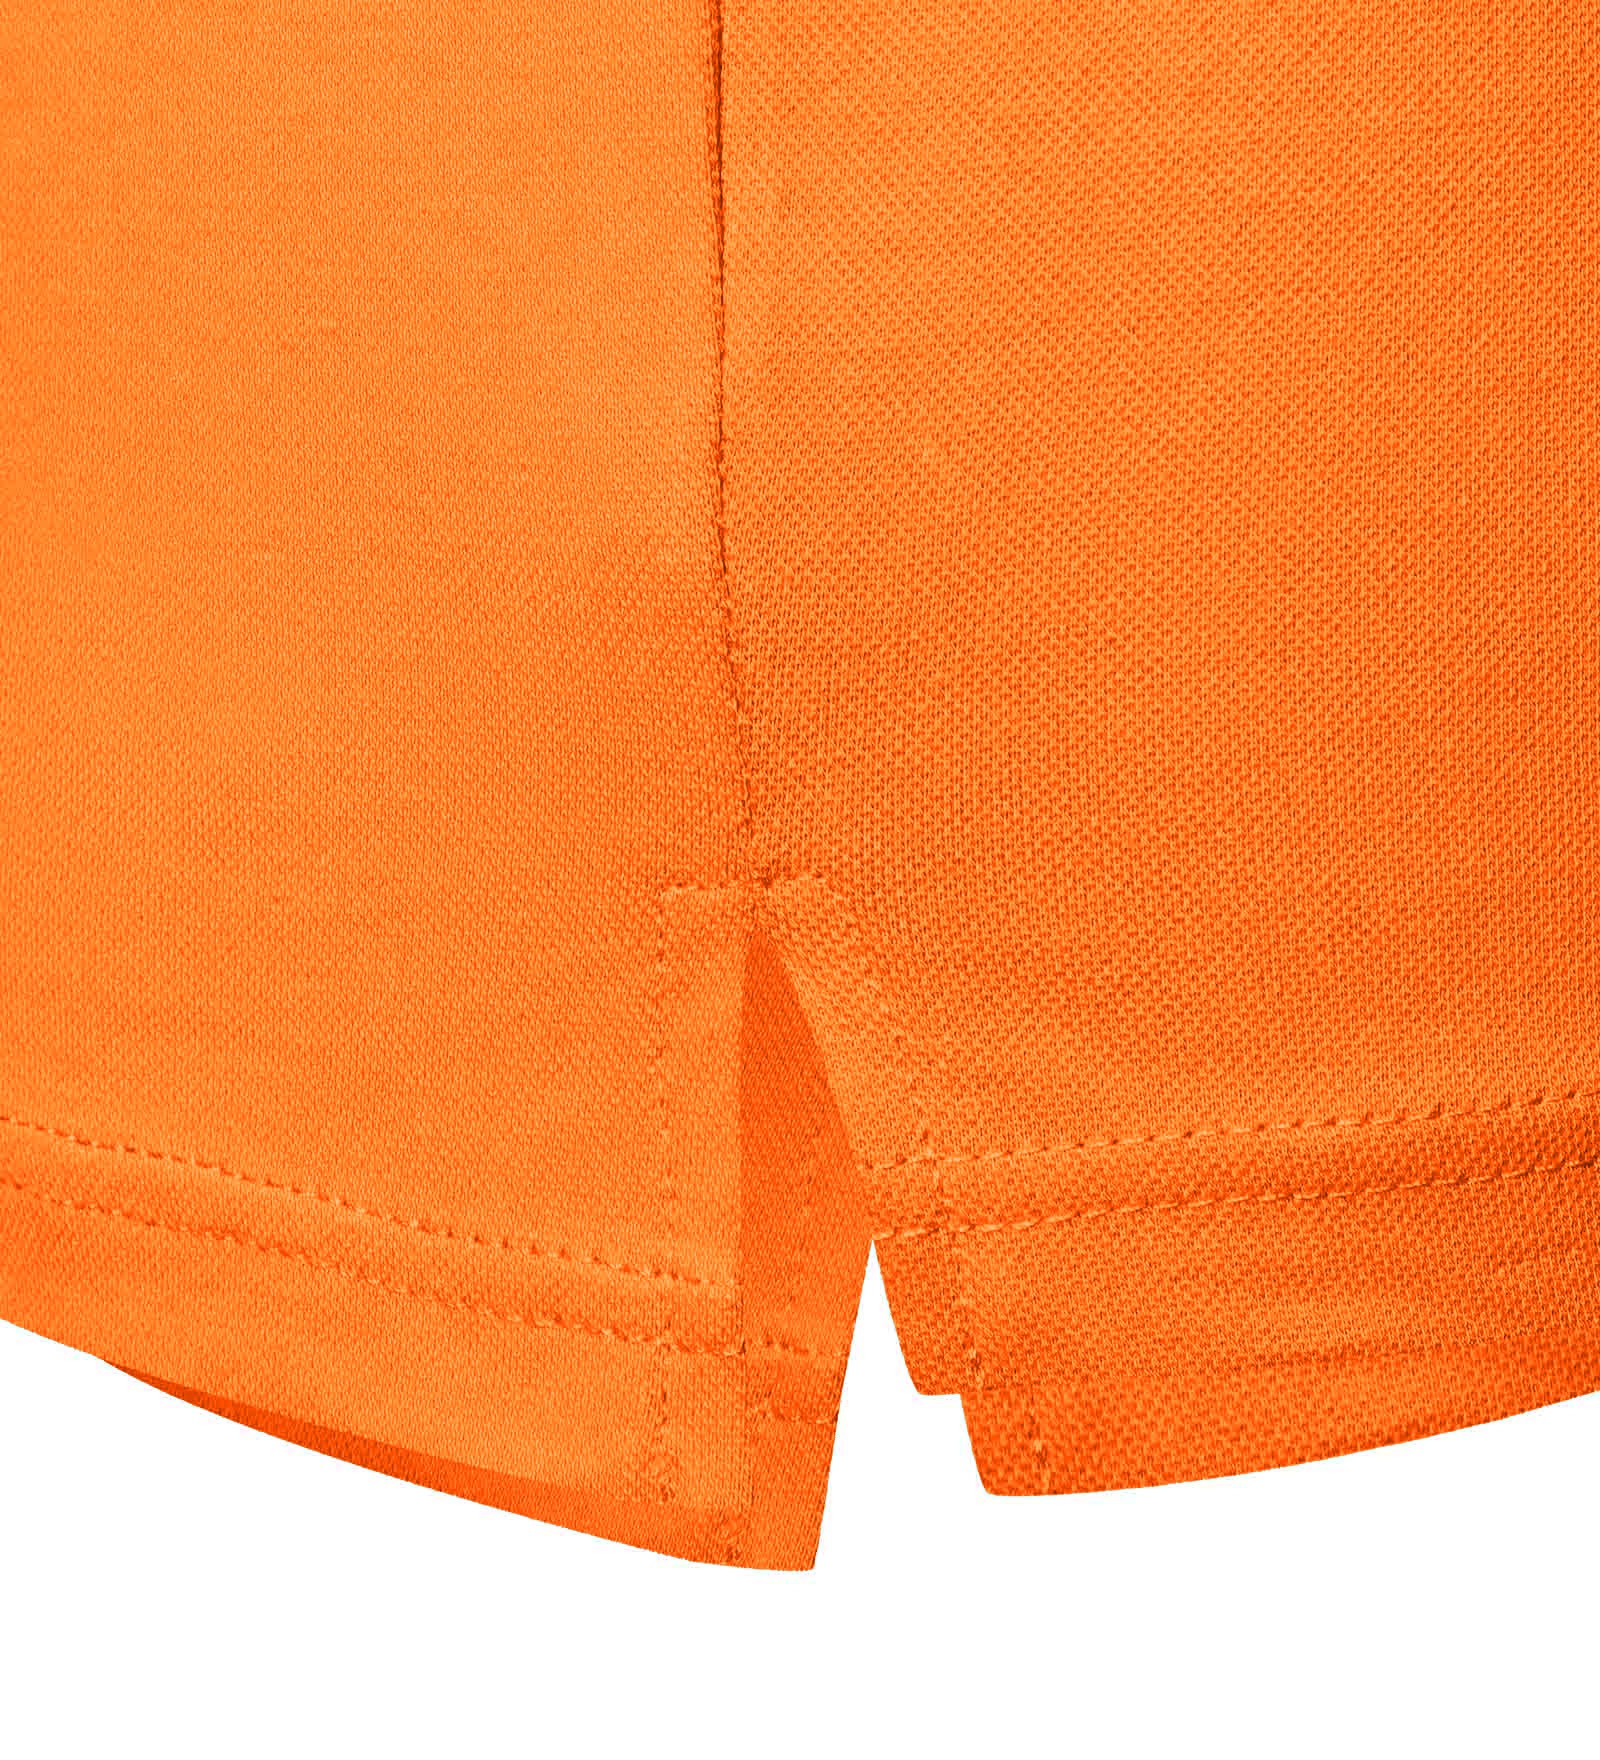 Polo in cotone elasticizzato Arancione da Uomo 